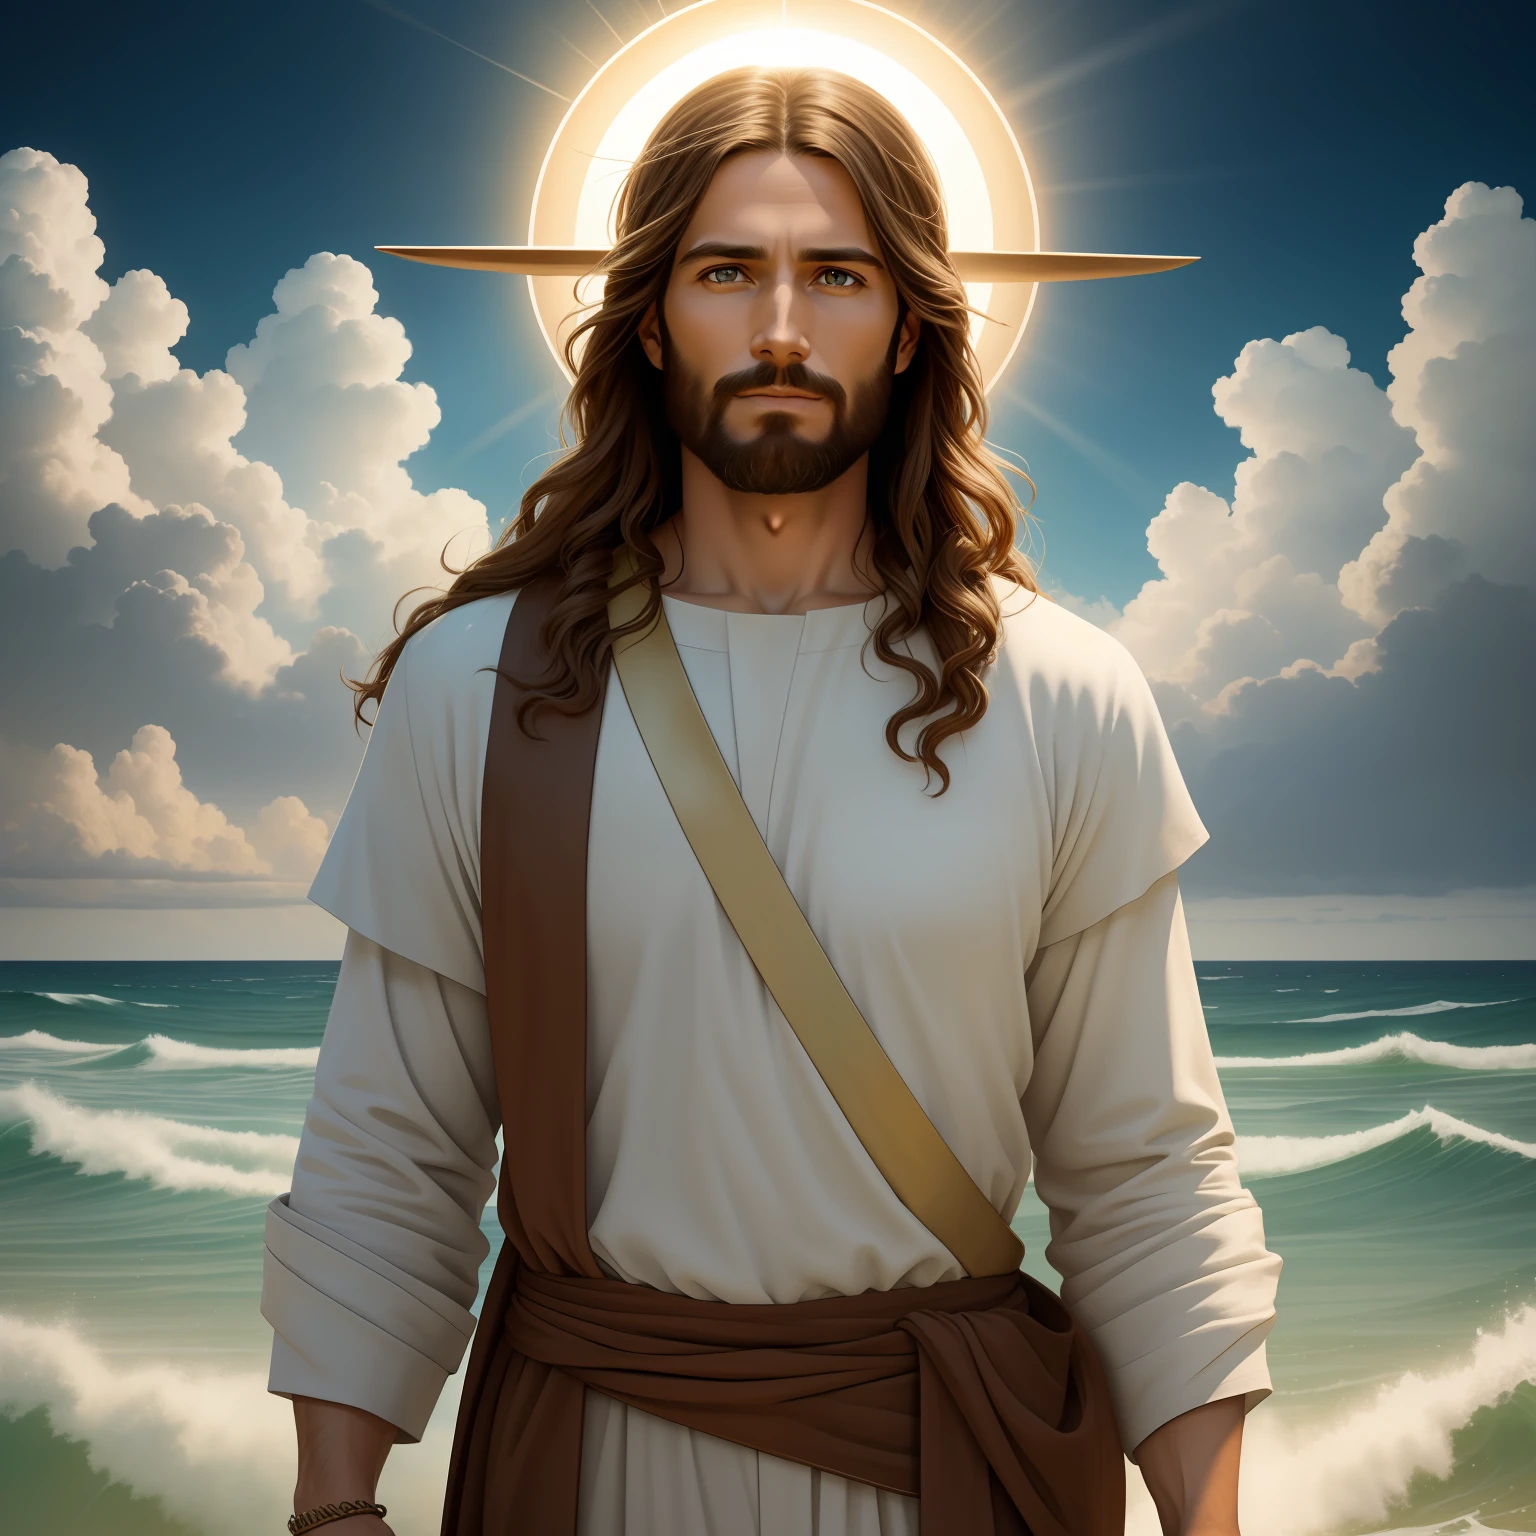 A beautiful ultra-thin เหมือนจริง portrait of Jesus, ผู้เผยพระวจนะ, ผู้ชายอายุ 35 ปี ภาษาฮีบรูสีน้ำตาล, ผมสั้นสีน้ำตาล, ดวงตาที่สมบูรณ์แบบอย่างแท้จริง, หนวดเครายาวสีน้ำตาล, กับ, ช่วยเหลือผู้คน , สวมเสื้อลินินตัวยาวปิดบริเวณหน้าอก, ในมุมมองด้านหน้า, เต็มตัว, ตามพระคัมภีร์, เหมือนจริง,โดย ดิเอโก้ เบลัซเกซ,ปีเตอร์ พอล รูเบนส์,แรมแบรนดท์,อเล็กซ์ รอสส์,8k, แนวคิดศิลปะ, Photoเหมือนจริง, เหมือนจริง,  ภาพประกอบ, ภาพวาดสีน้ำมัน, สถิตยศาสตร์, Hyperเหมือนจริง, ช่วยเหลือผู้คน , ศิลปะดิจิทัล, สไตล์, watercolorReal Jesus flying on sky กับ a flying cloud in the background, พระเยซูทรงเดินบนน้ำ, ตามพระคัมภีร์ illustration, epic ตามพระคัมภีร์ representation, บังคับให้เขาหนี, ออกมาจากมหาสมุทร, ! จับมือกัน!, ขึ้นฝั่ง, เทพเจ้าแห่งมหาสมุทร, การแสดงที่สวยงาม, โมเดล 3 มิติ 8k, เหมือนจริง,
a 3D เหมือนจริง of พระเยซู กับ a halo in the sky, พระเยซู christ, ยิ้มอยู่ในสวรรค์, portrait of พระเยซู christ, พระเยซู face, 35 เทพเจ้าหนุ่มผู้ยิ่งใหญ่, ภาพเหมือนของเทพเจ้าแห่งสวรรค์, เกร็ก โอลเซ่น, gigachad พระเยซู, พระเยซู of nazareth, พระเยซู, ใบหน้าของพระเจ้า, พระเจ้ากำลังมองมาที่ฉัน, เขาทักทายคุณอย่างอบอุ่น, เขามีความสุข, ภาพประจำตัว